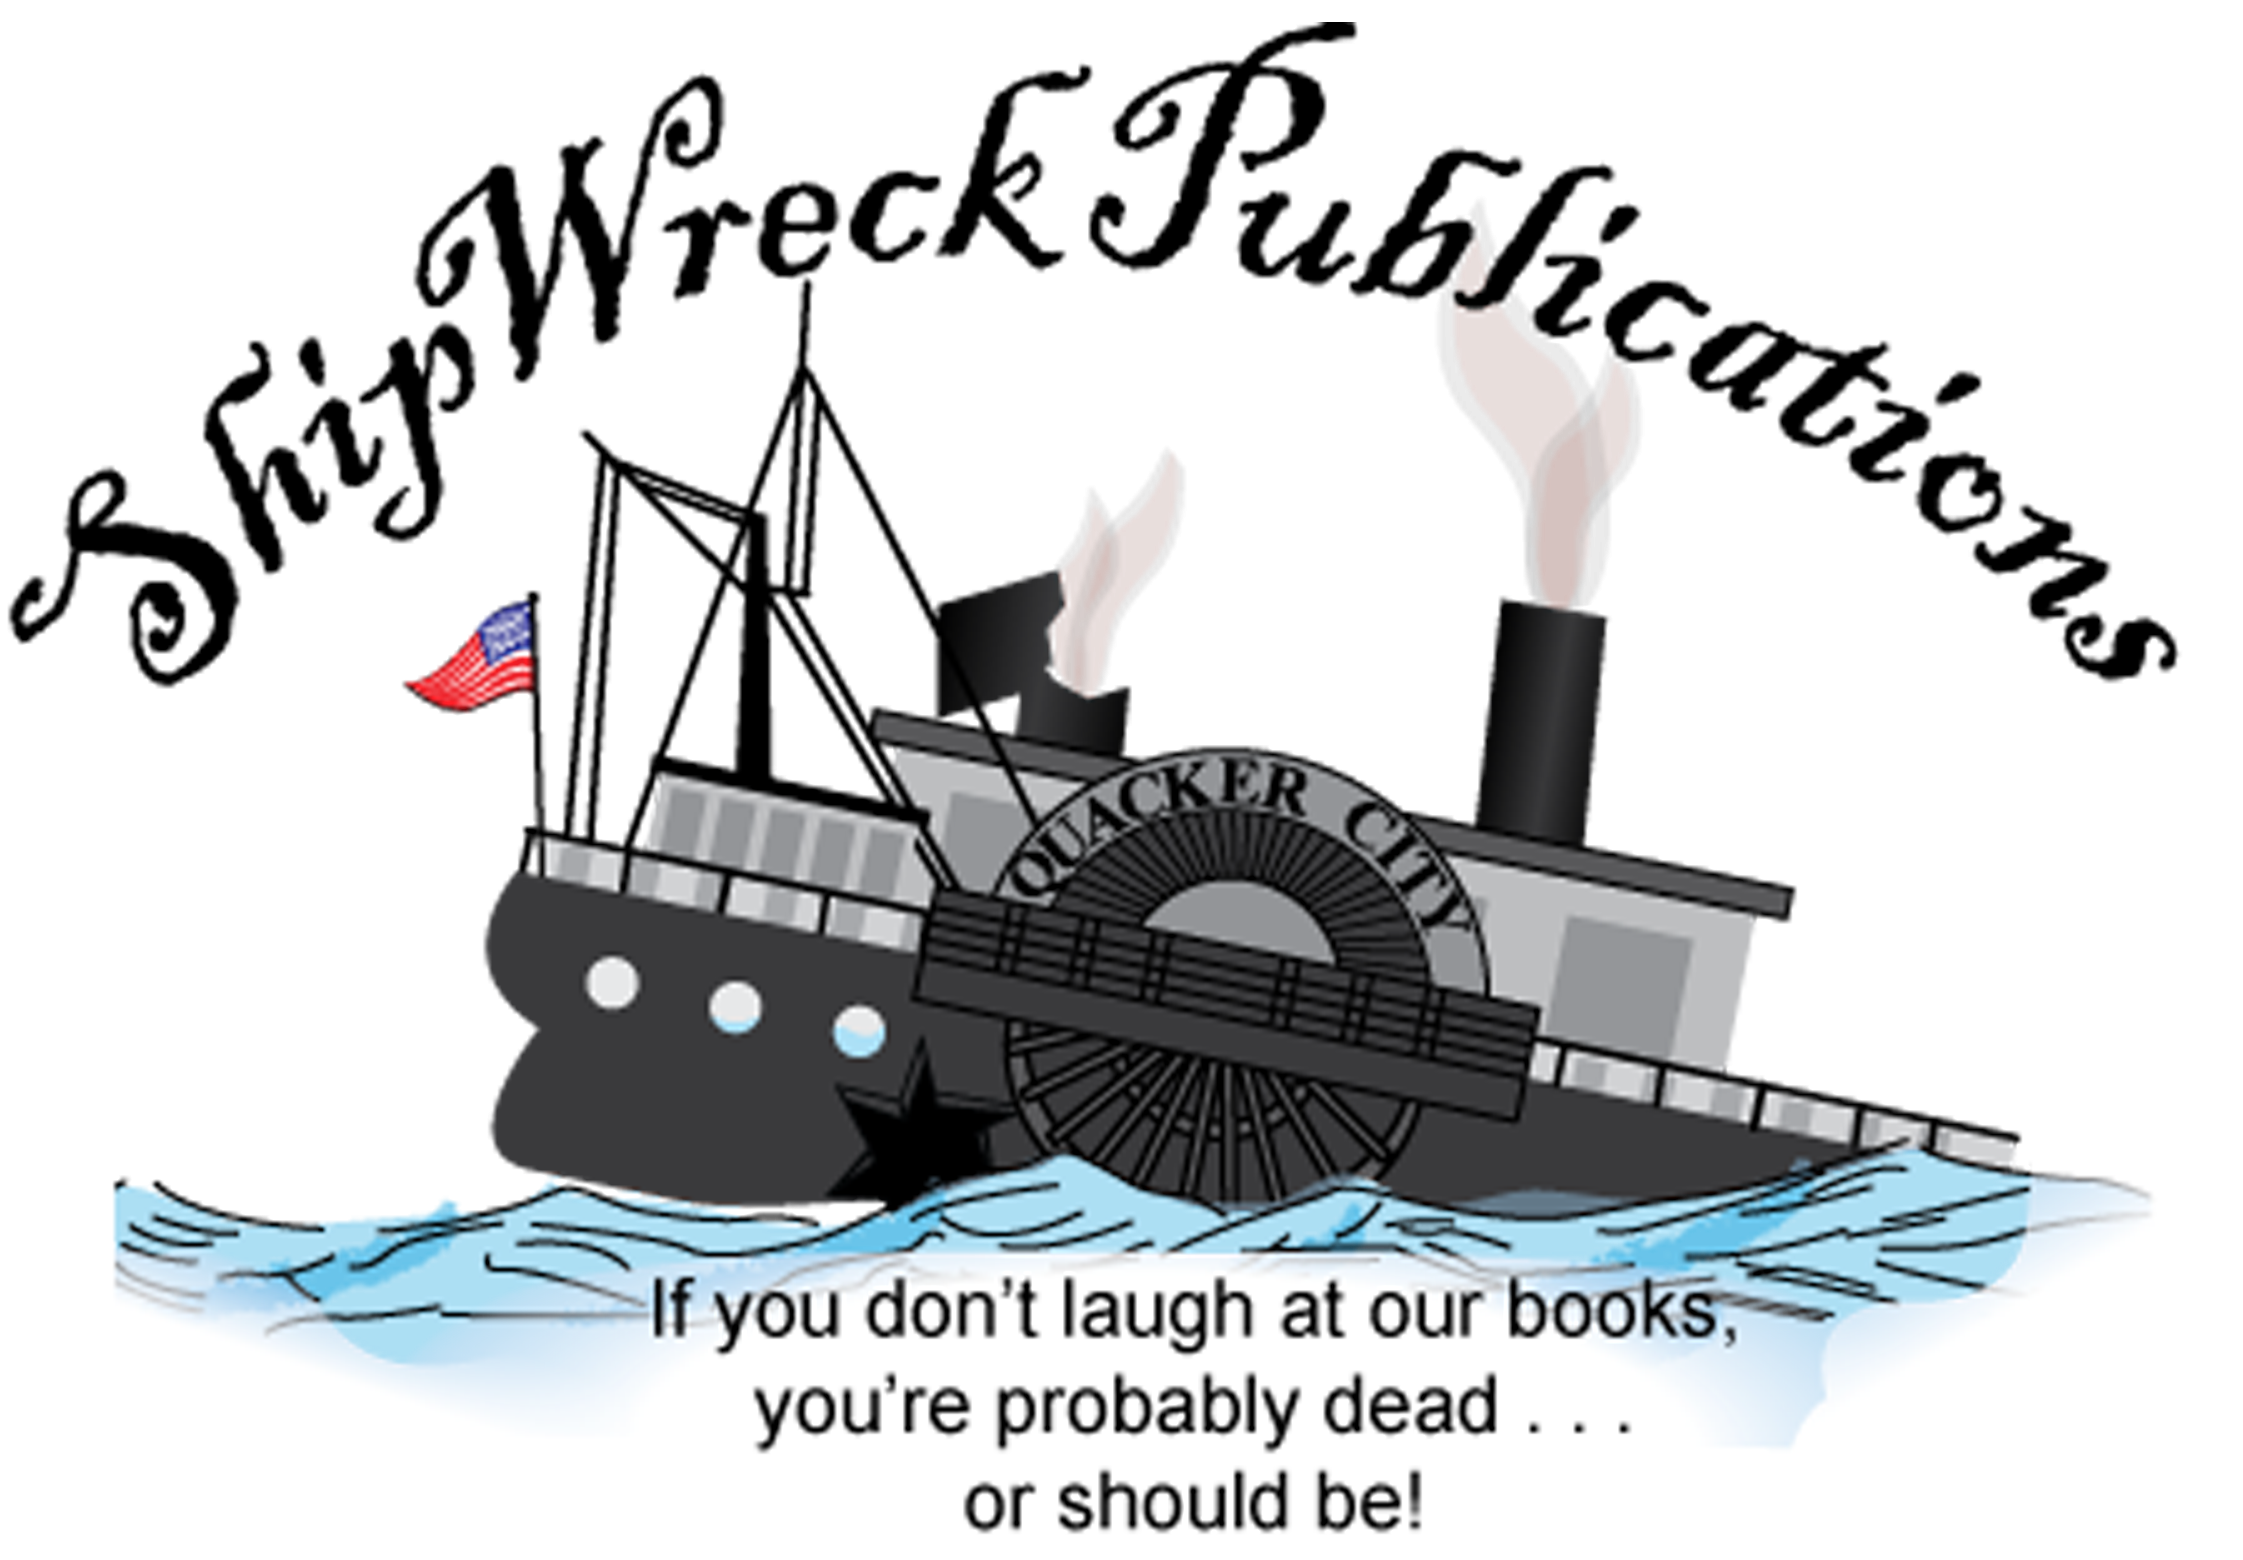 Shipwreck Publications